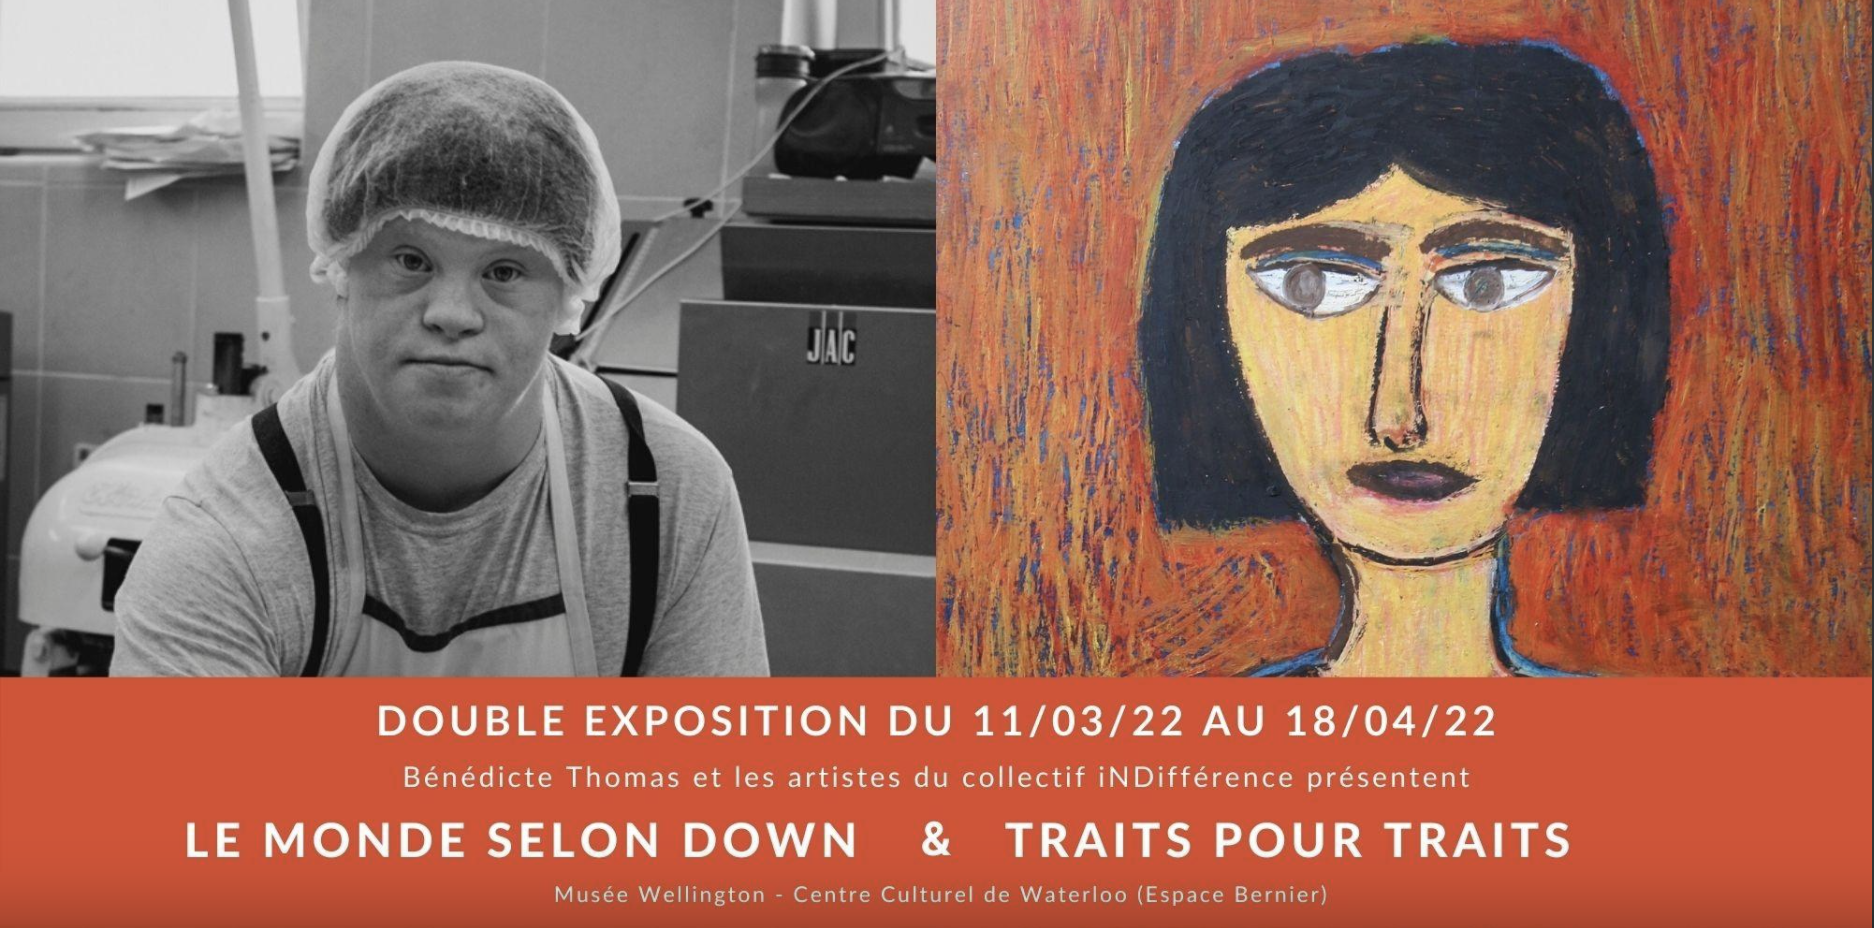 Exposition "Le Monde selon Down" au Musée Wellington | Du 11 mars 2022 au 18 avril 2022 | Waterloo